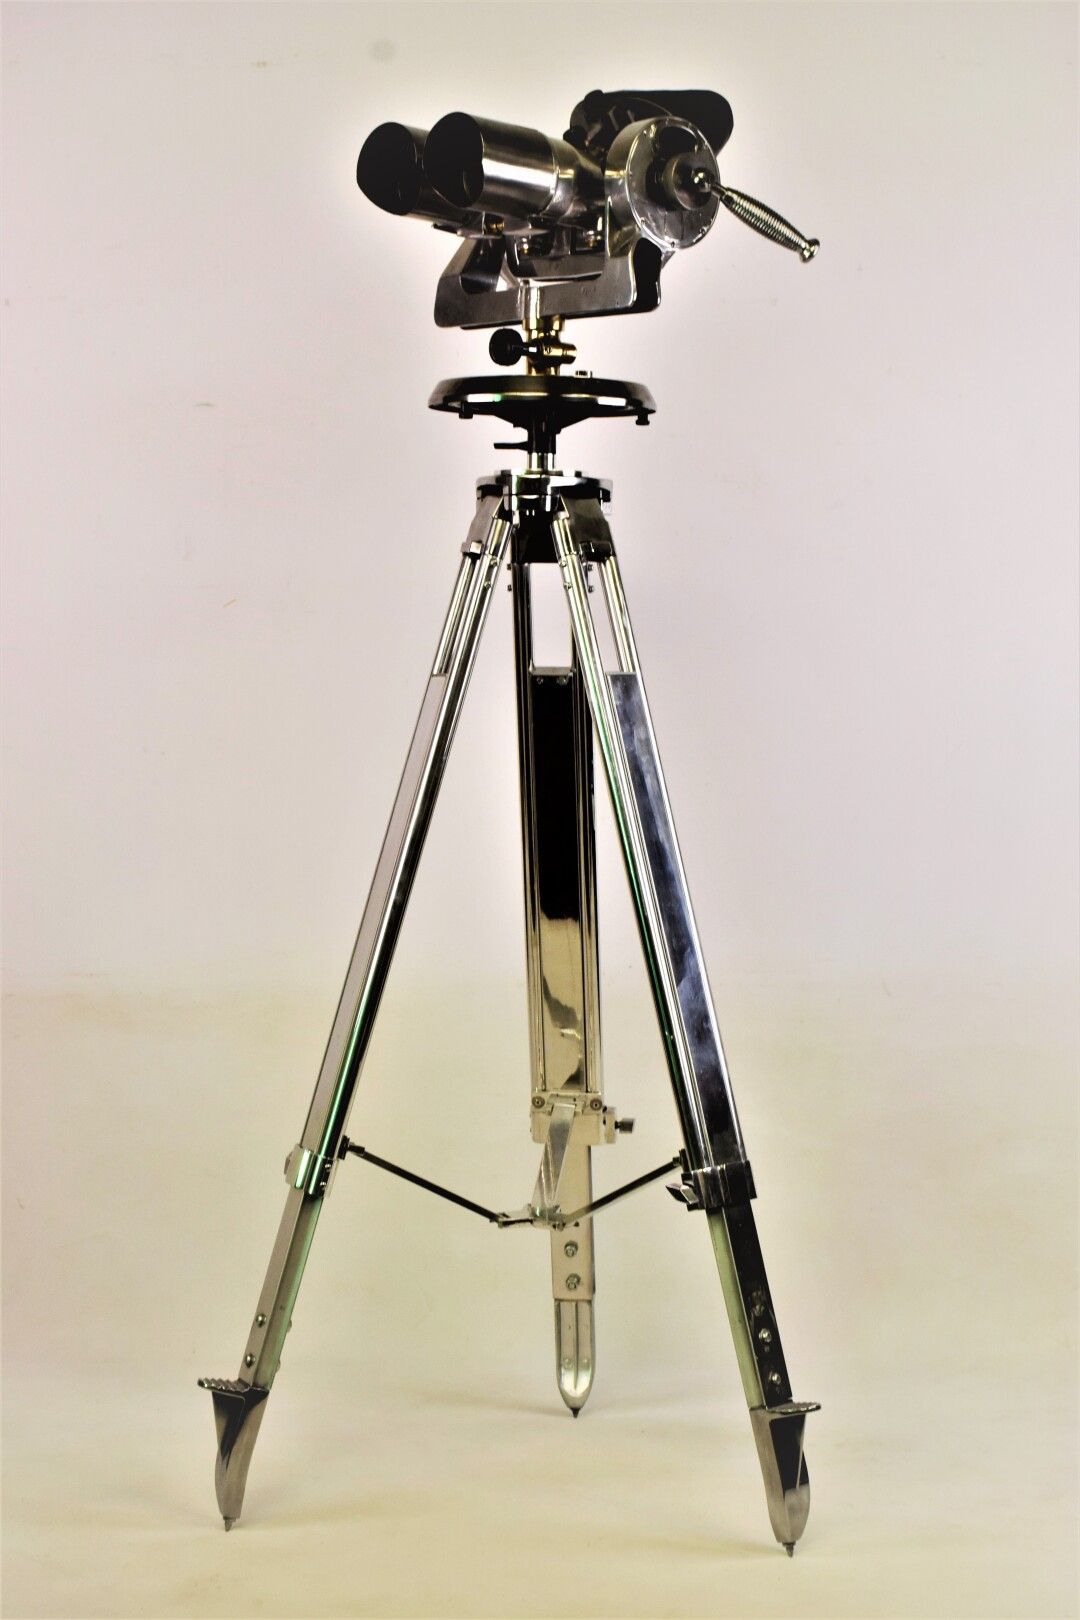 Null 443a

TZK

一对漂亮而大的钢制和铜制双筒望远镜，铝制光学罩，推测为10 x 80

带有R-12092的编号

配有抛光的铝制三脚架

(光&hellip;